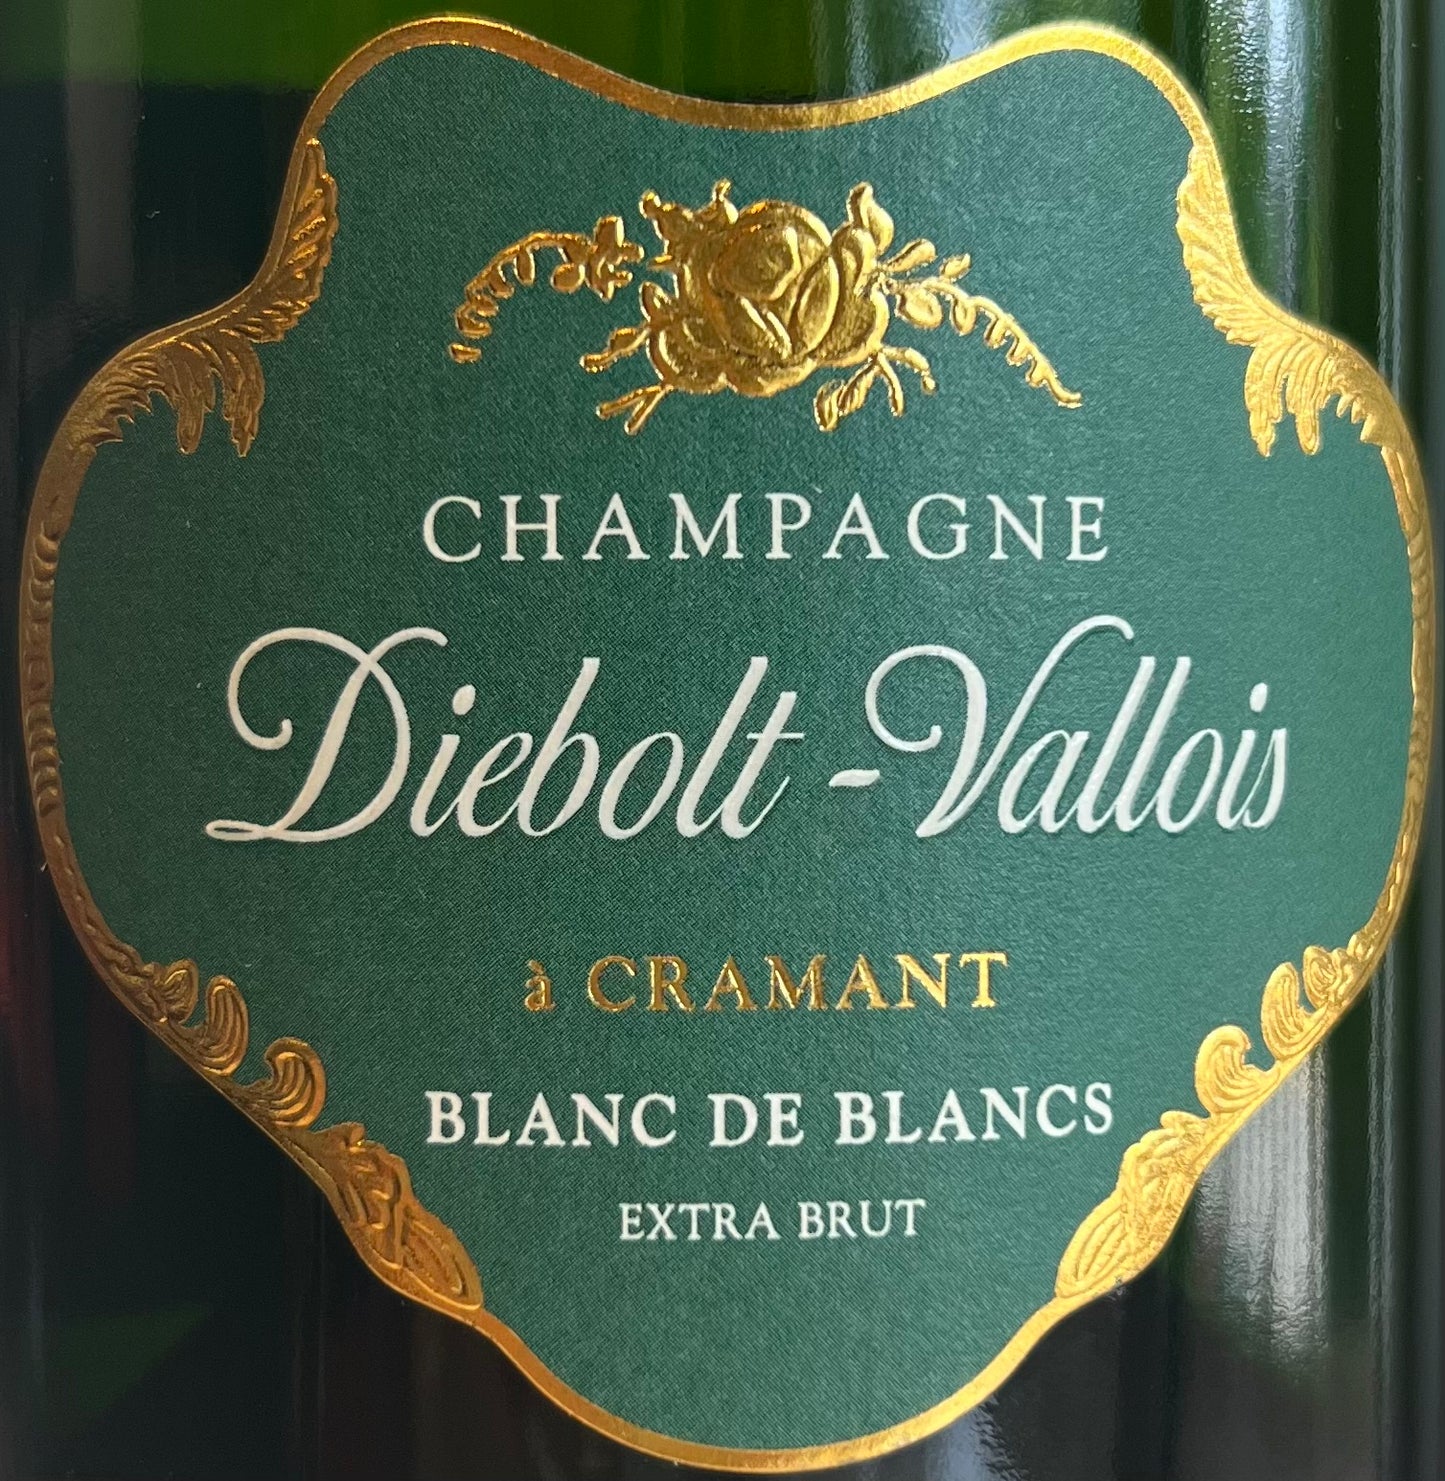 Diebolt-Vallois - Brut - Blanc de Blancs Champagne